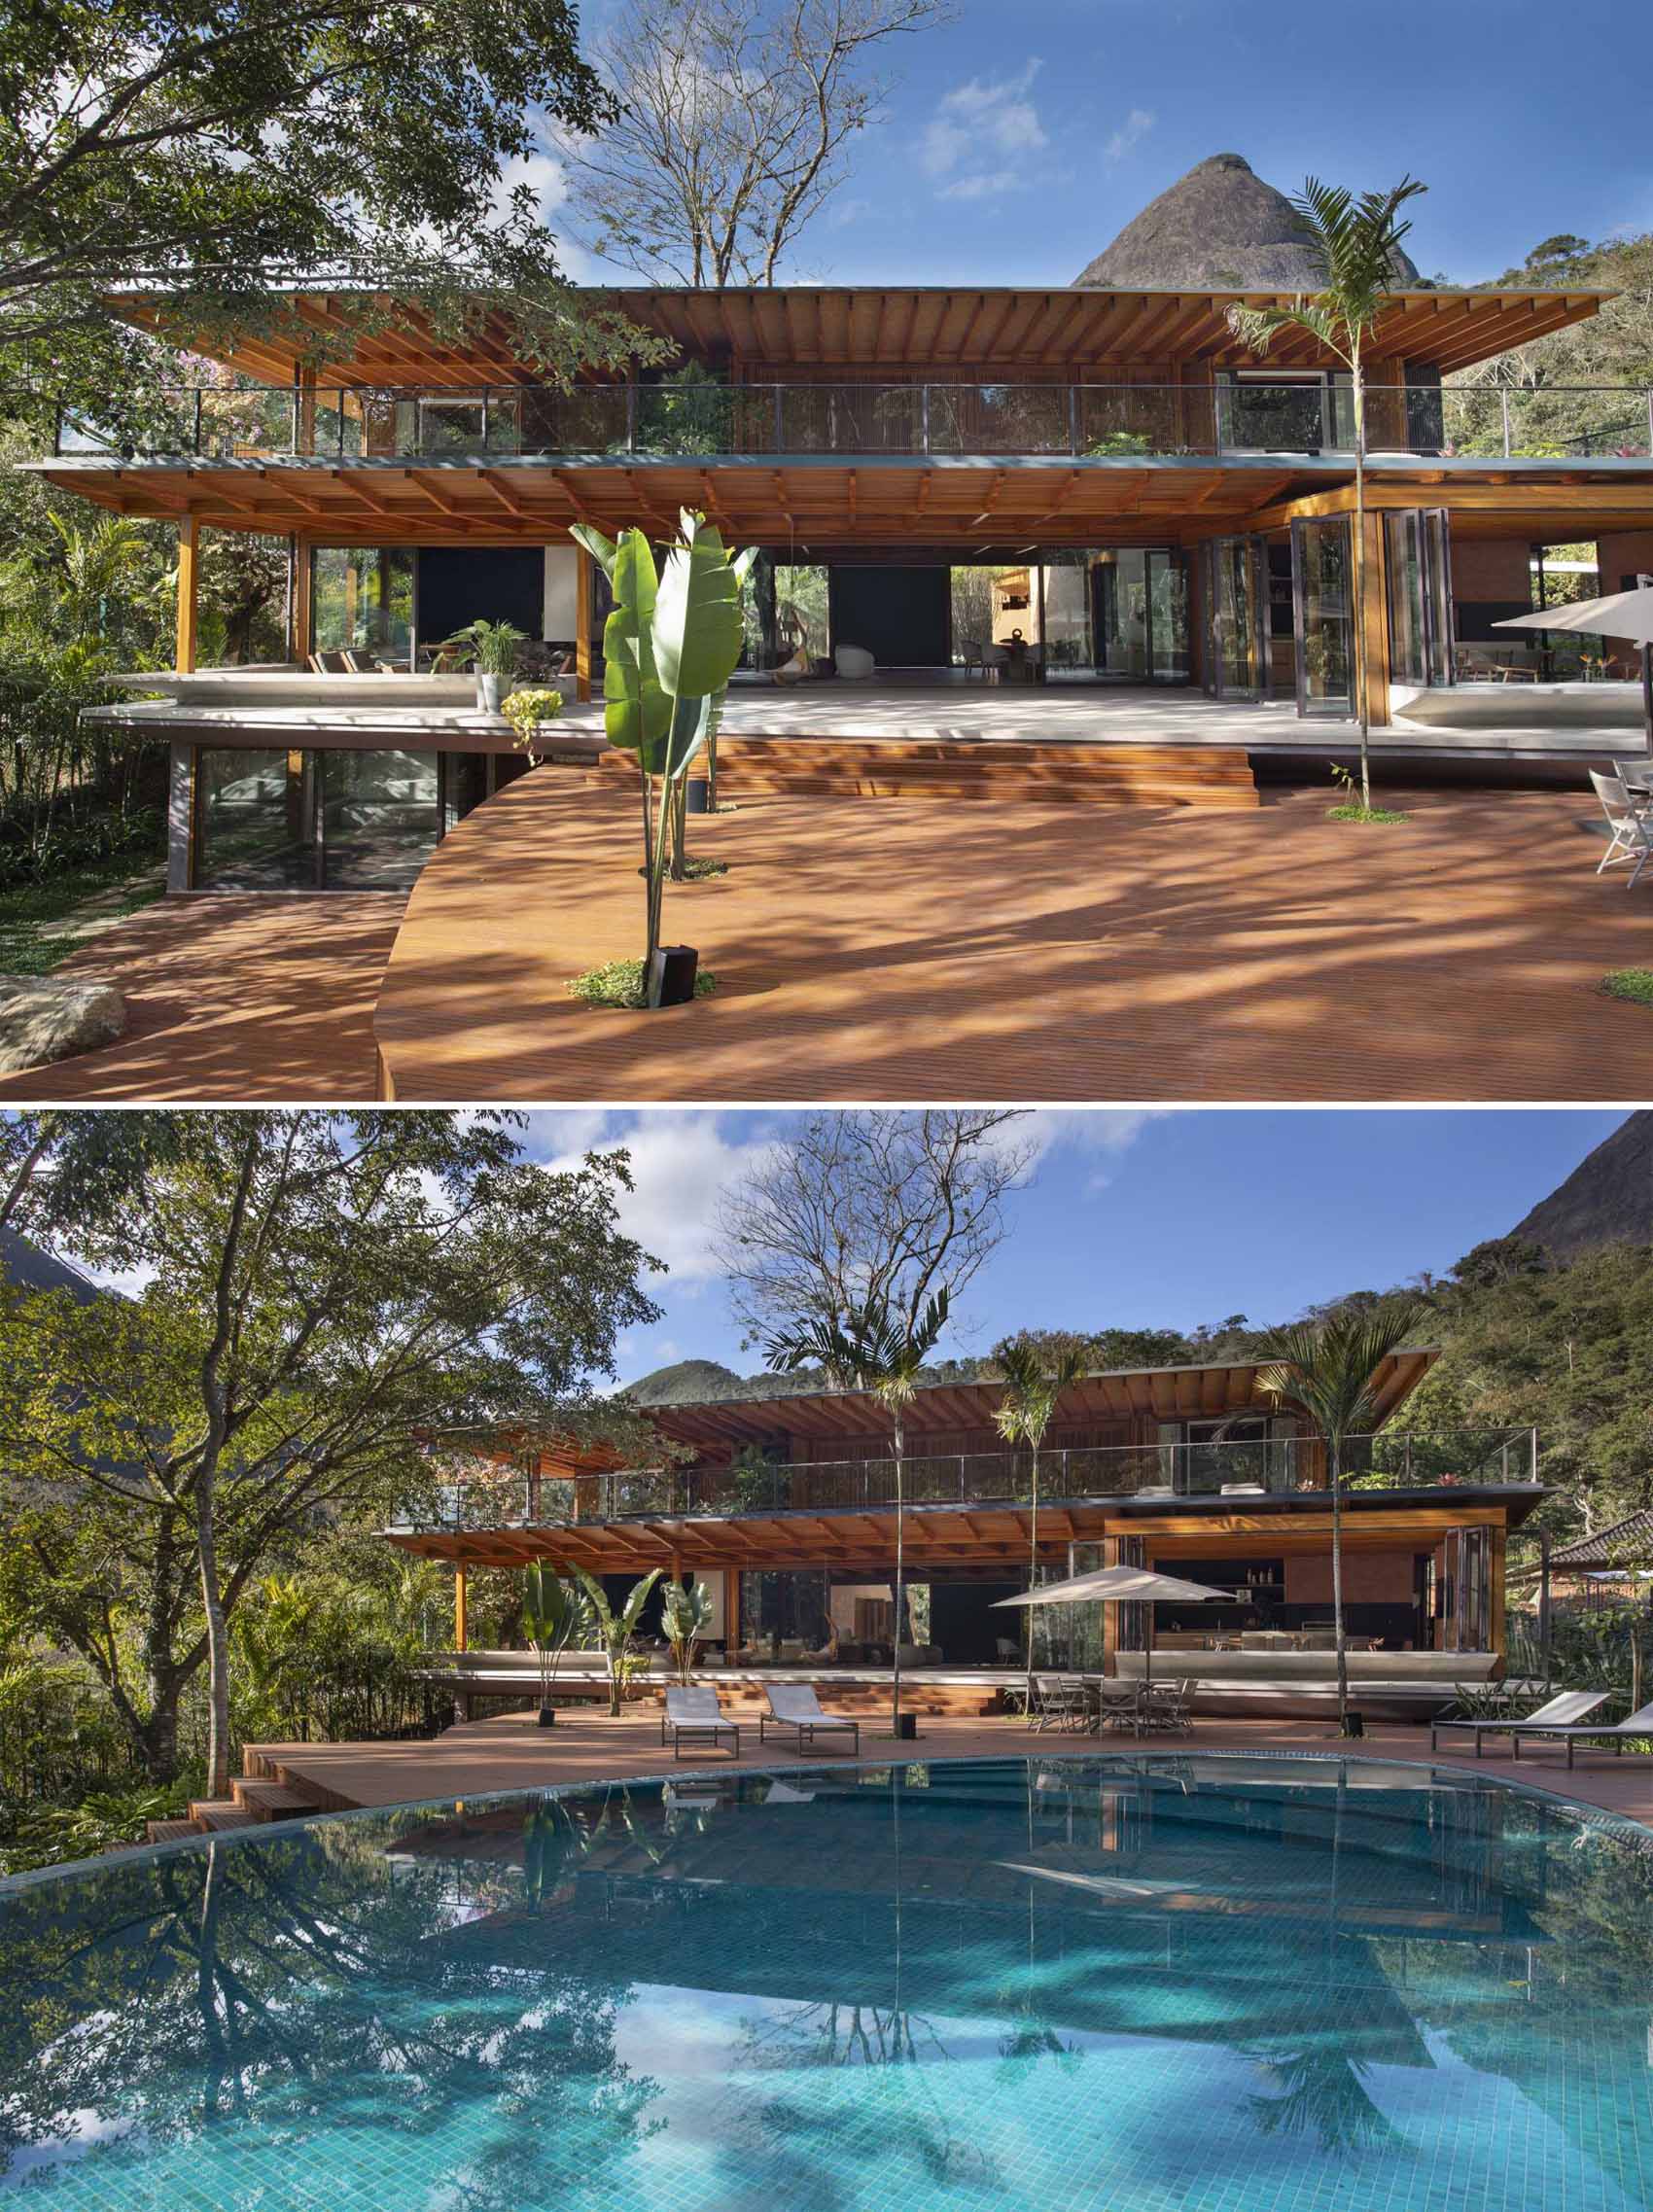 Această casă modernă are trepte care duc de la terasă la puntea de lemn, care are deschideri prin care să crească plantele.  Puntea se înfășoară în jurul piscinei, ambele având vedere la copaci.